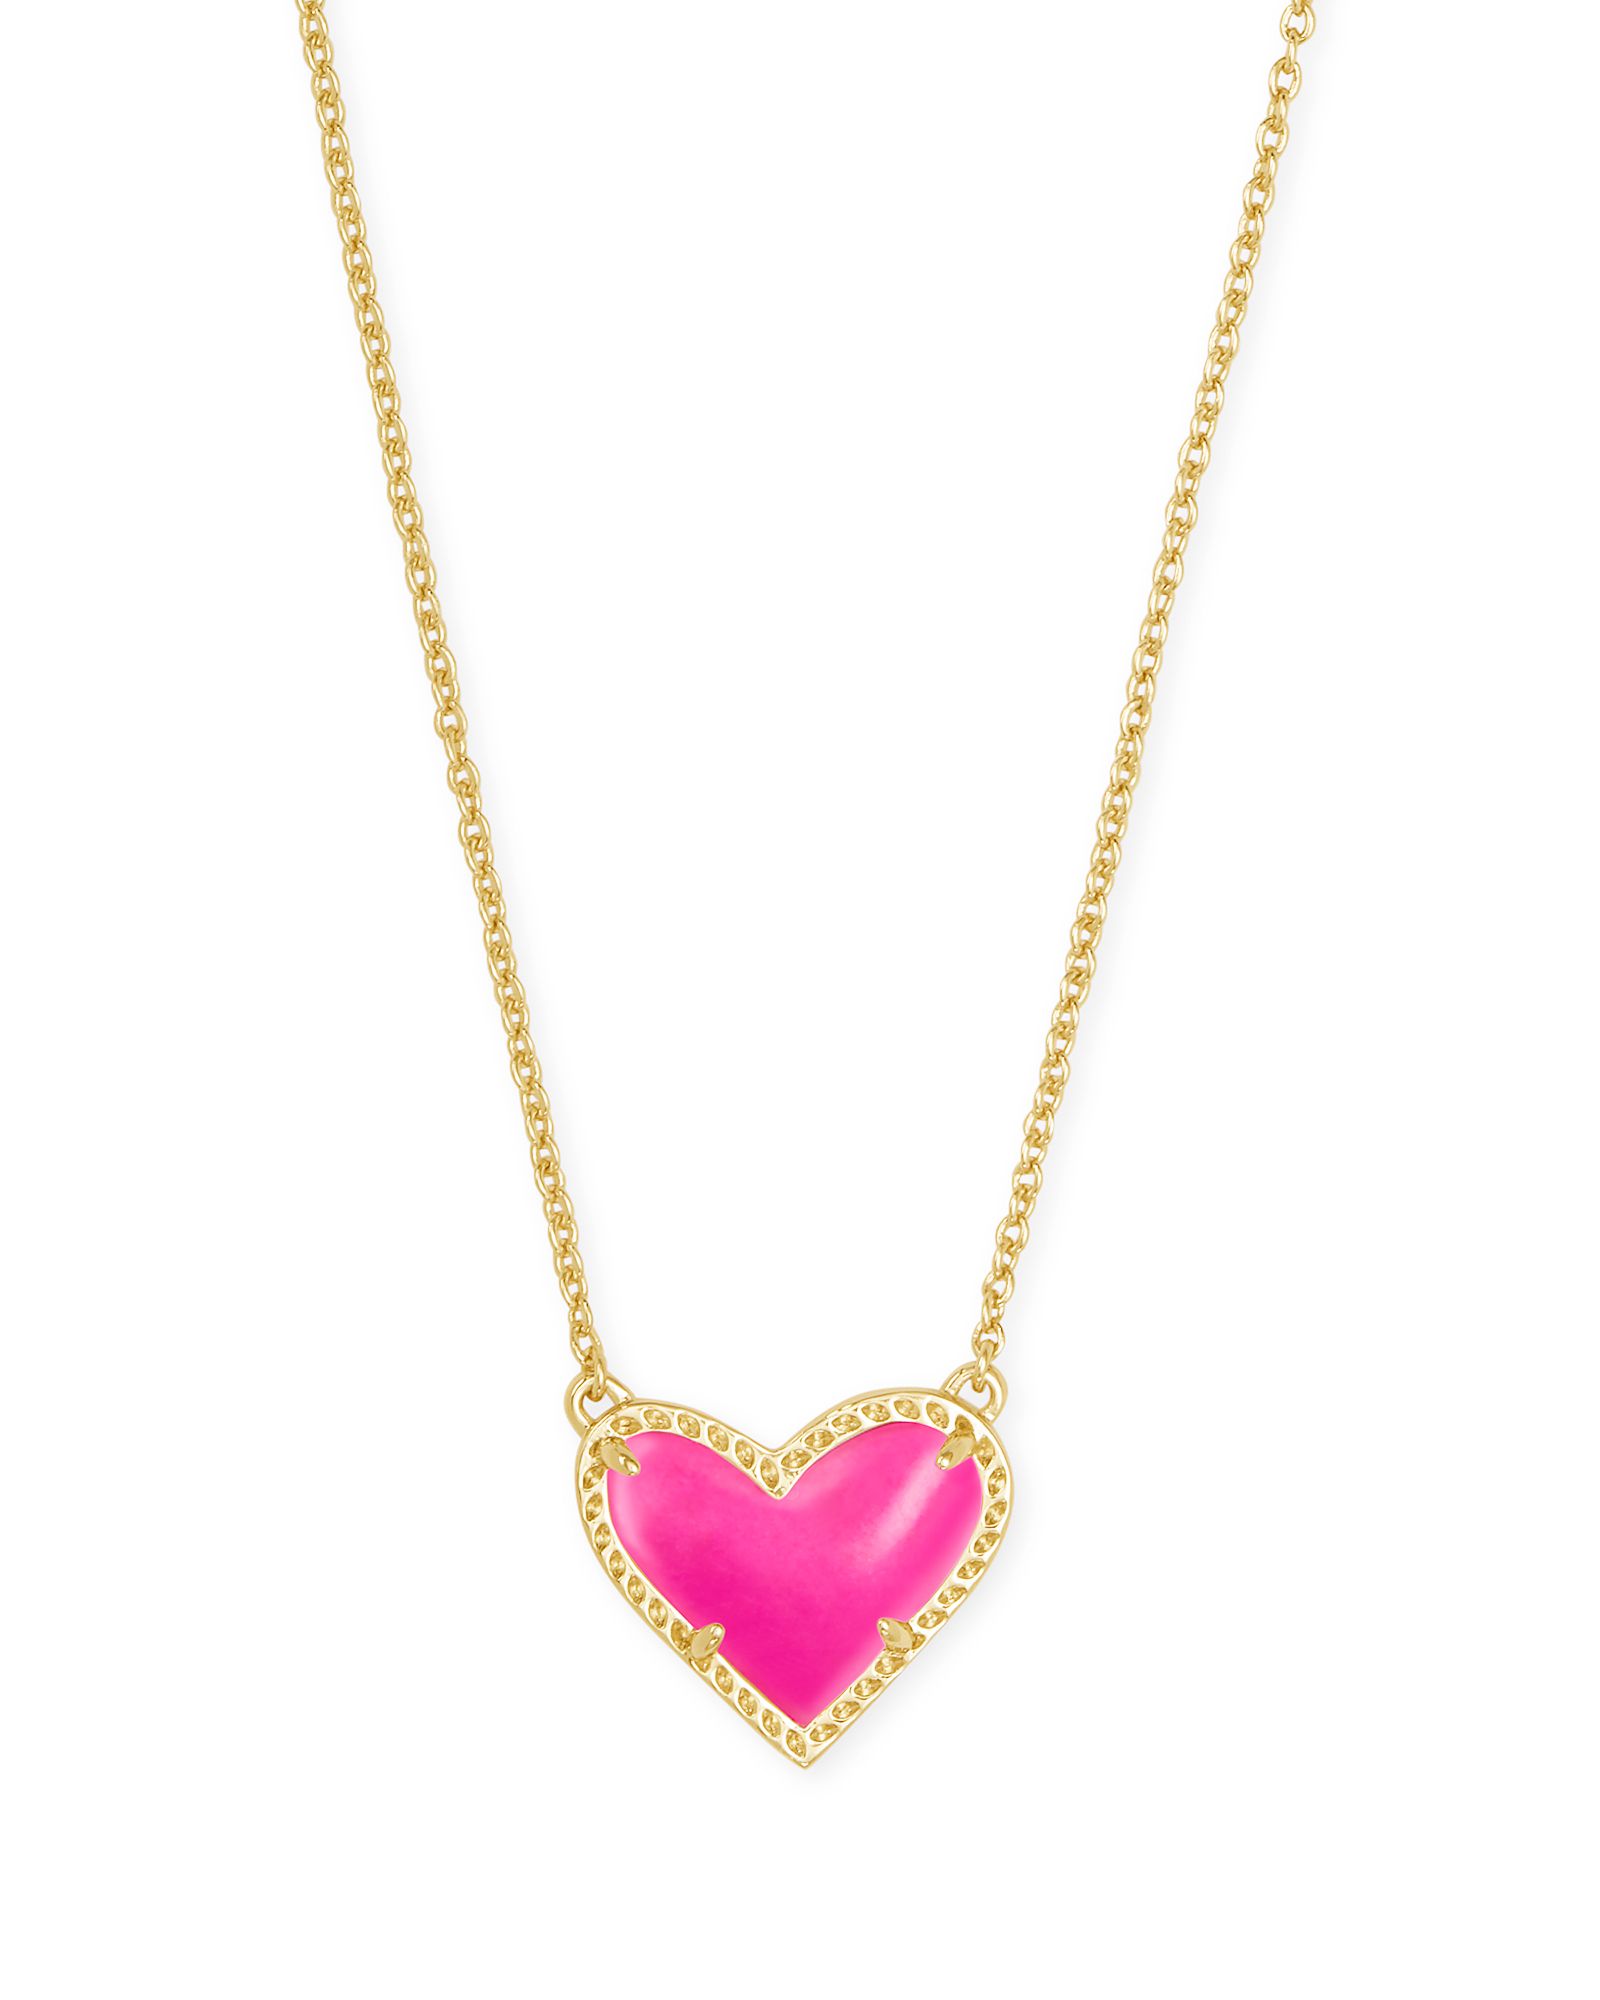 Ari Heart Gold Short Pendant Necklace in Magenta Magnesite | Kendra Scott